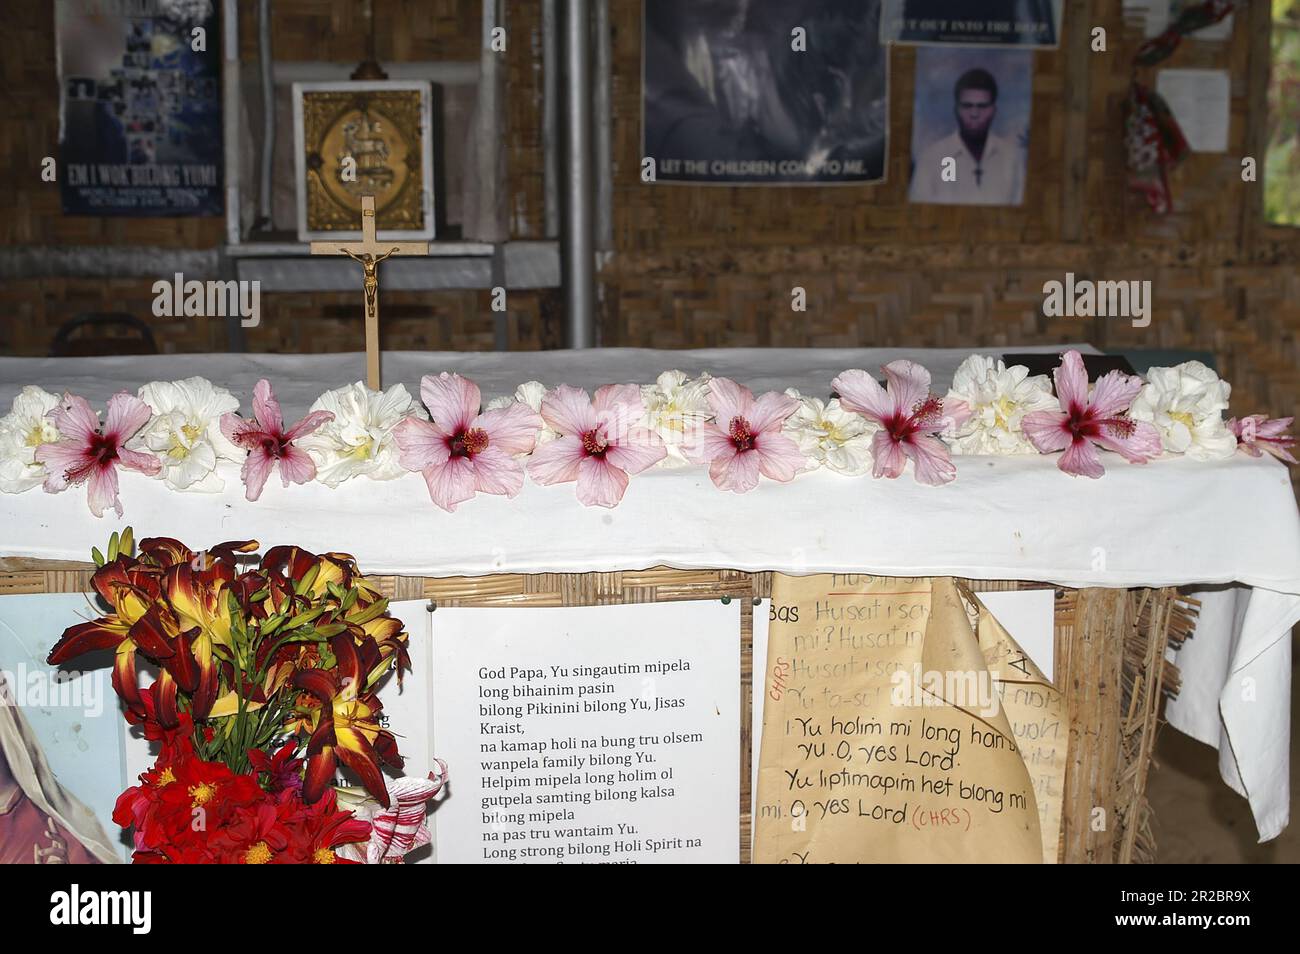 Papua Nuova Guinea; Highlands orientali; Goroka; l'altare nella cappella della missione decorata con fiori esotici; Der altare geschmückt mit Blumen Foto Stock